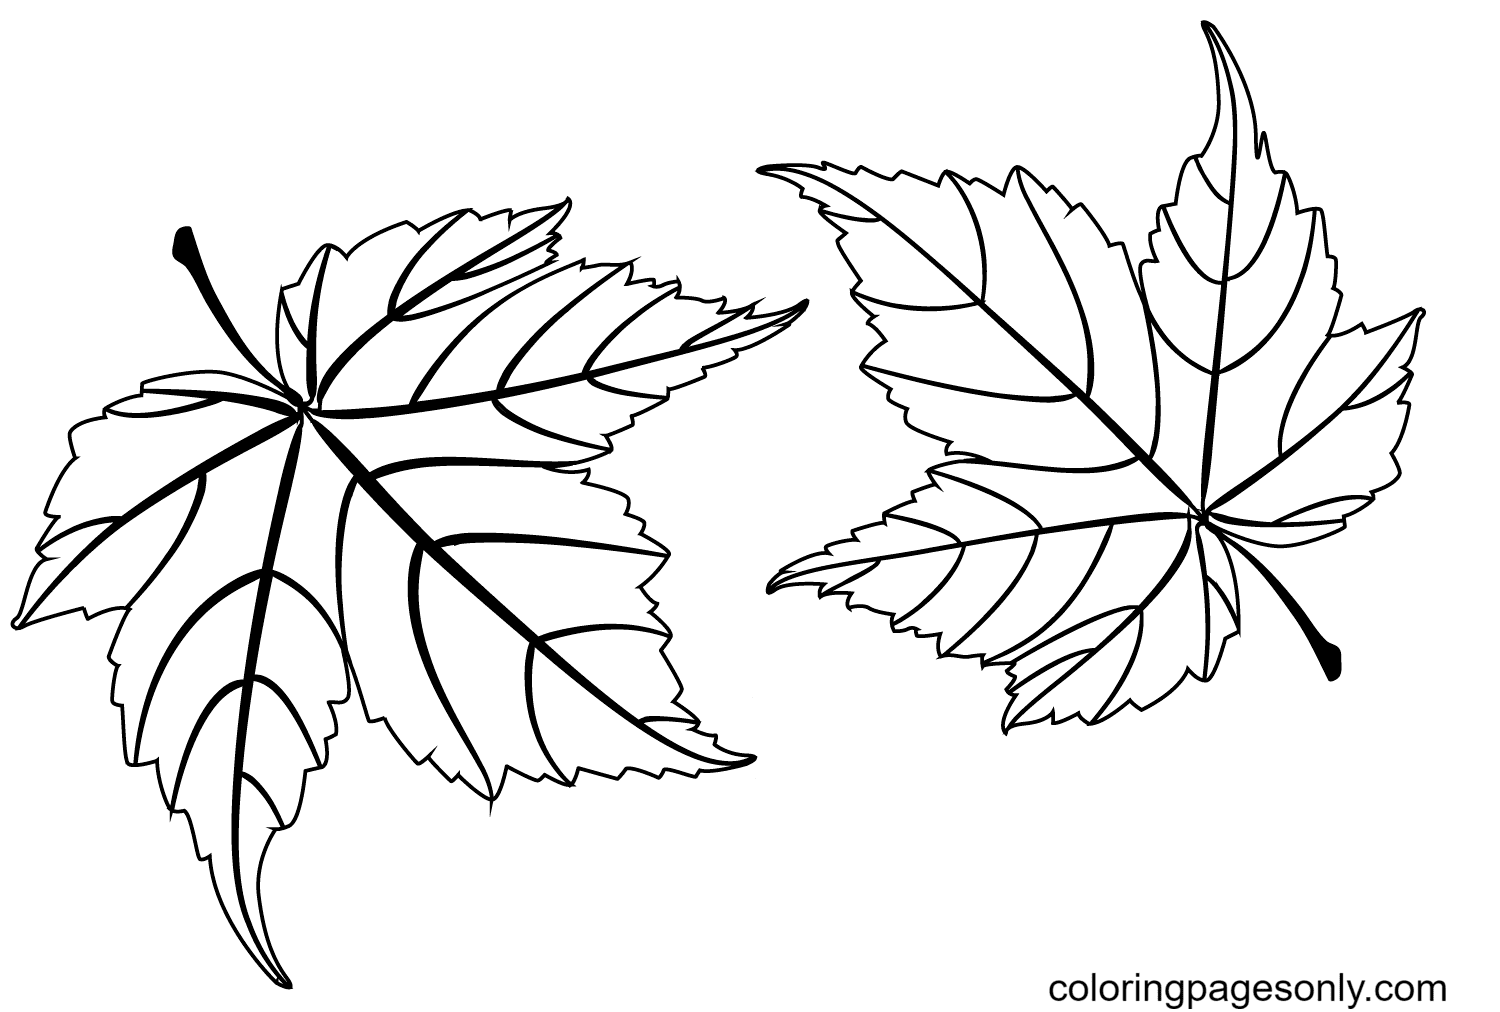 Coloriage de deux feuilles d'érable